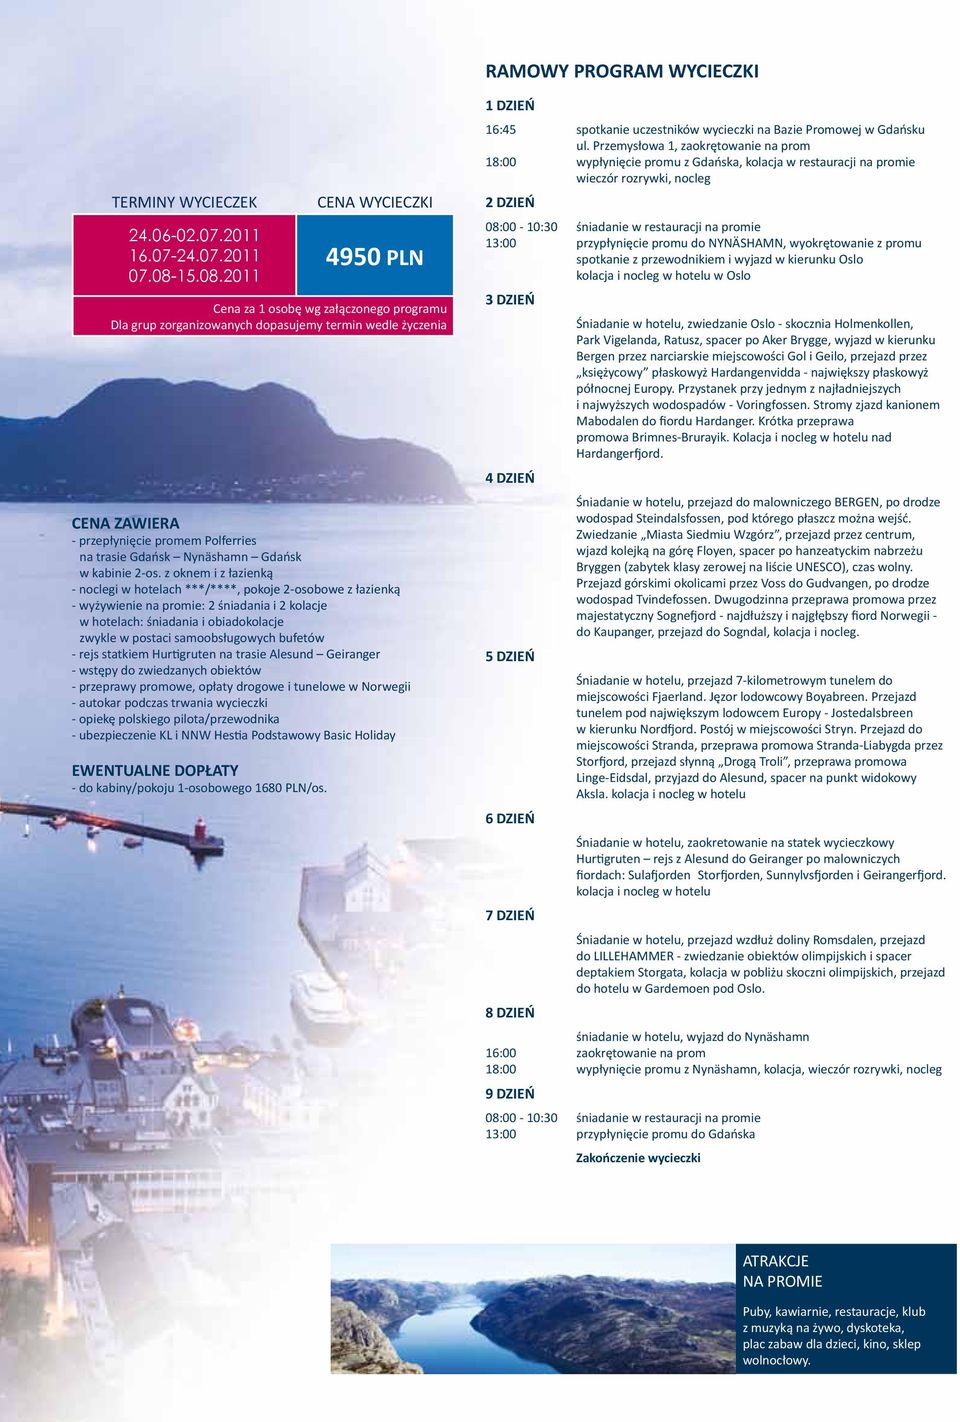 bufetów - rejs statkiem Hurtigruten na trasie Alesund Geiranger - wstępy do zwiedzanych obiektów - przeprawy promowe, opłaty drogowe i tunelowe w Norwegii - autokar podczas trwania wycieczki - opiekę